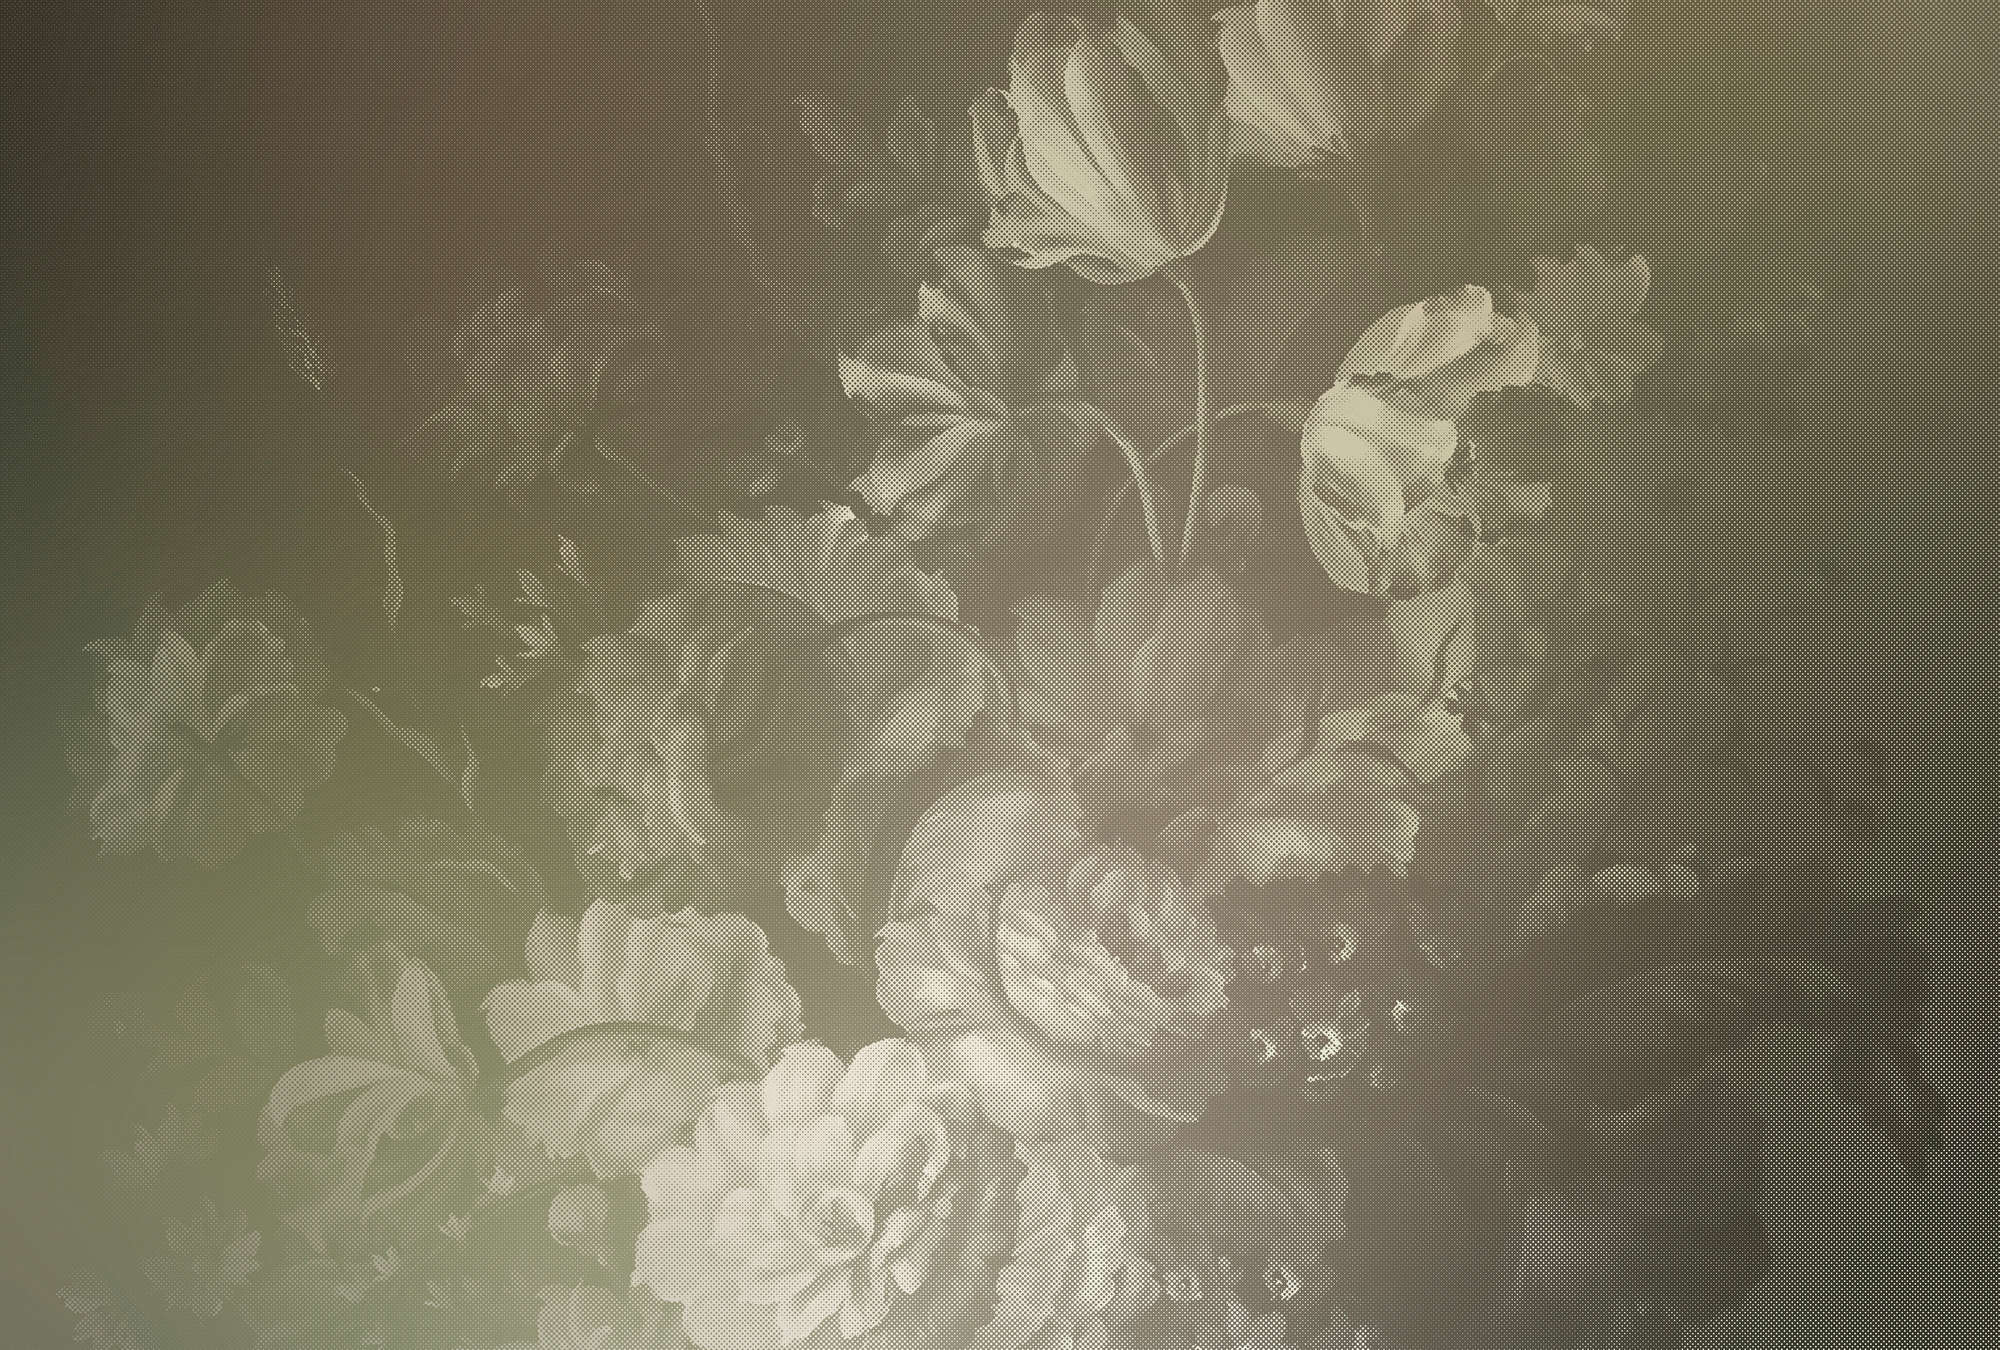             Olandese pastello 4 - Fotomurali con bouquet ornato in stile olandese - Taupe | Perla tessuto non tessuto liscio
        